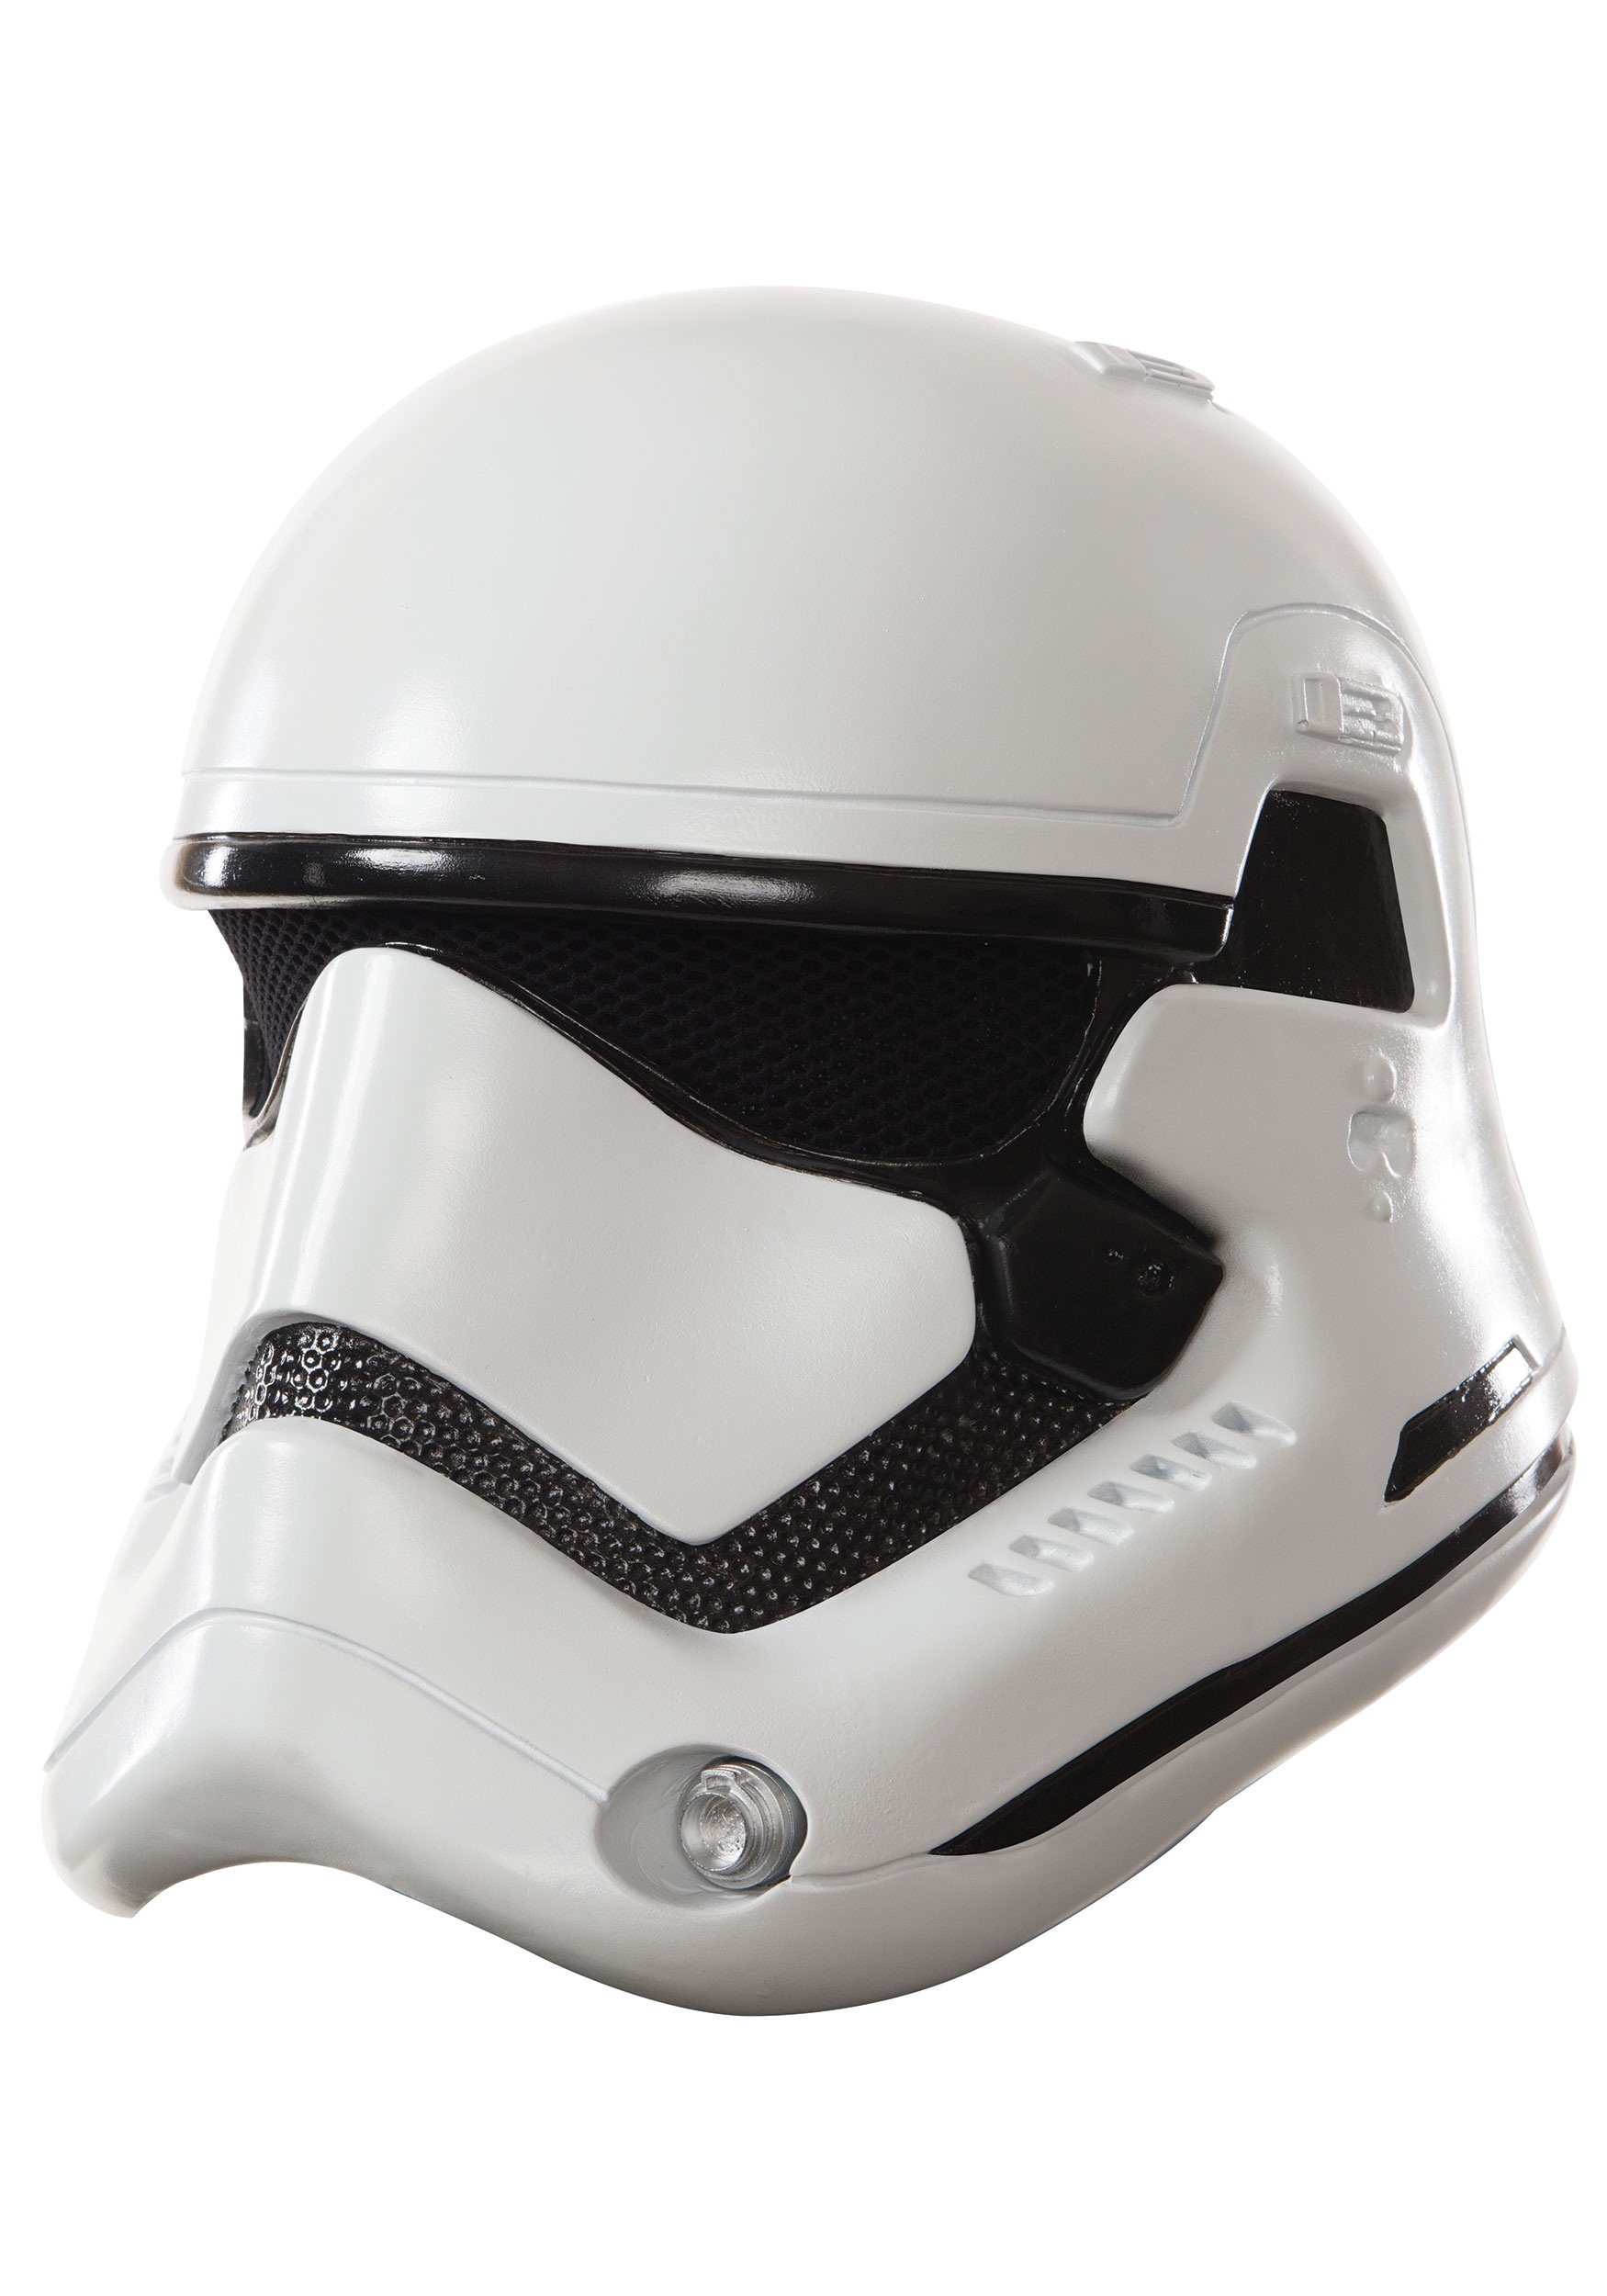 Zwaaien naam Modernisering Adult Star Wars The Force Awakens Deluxe Stormtrooper Helmet